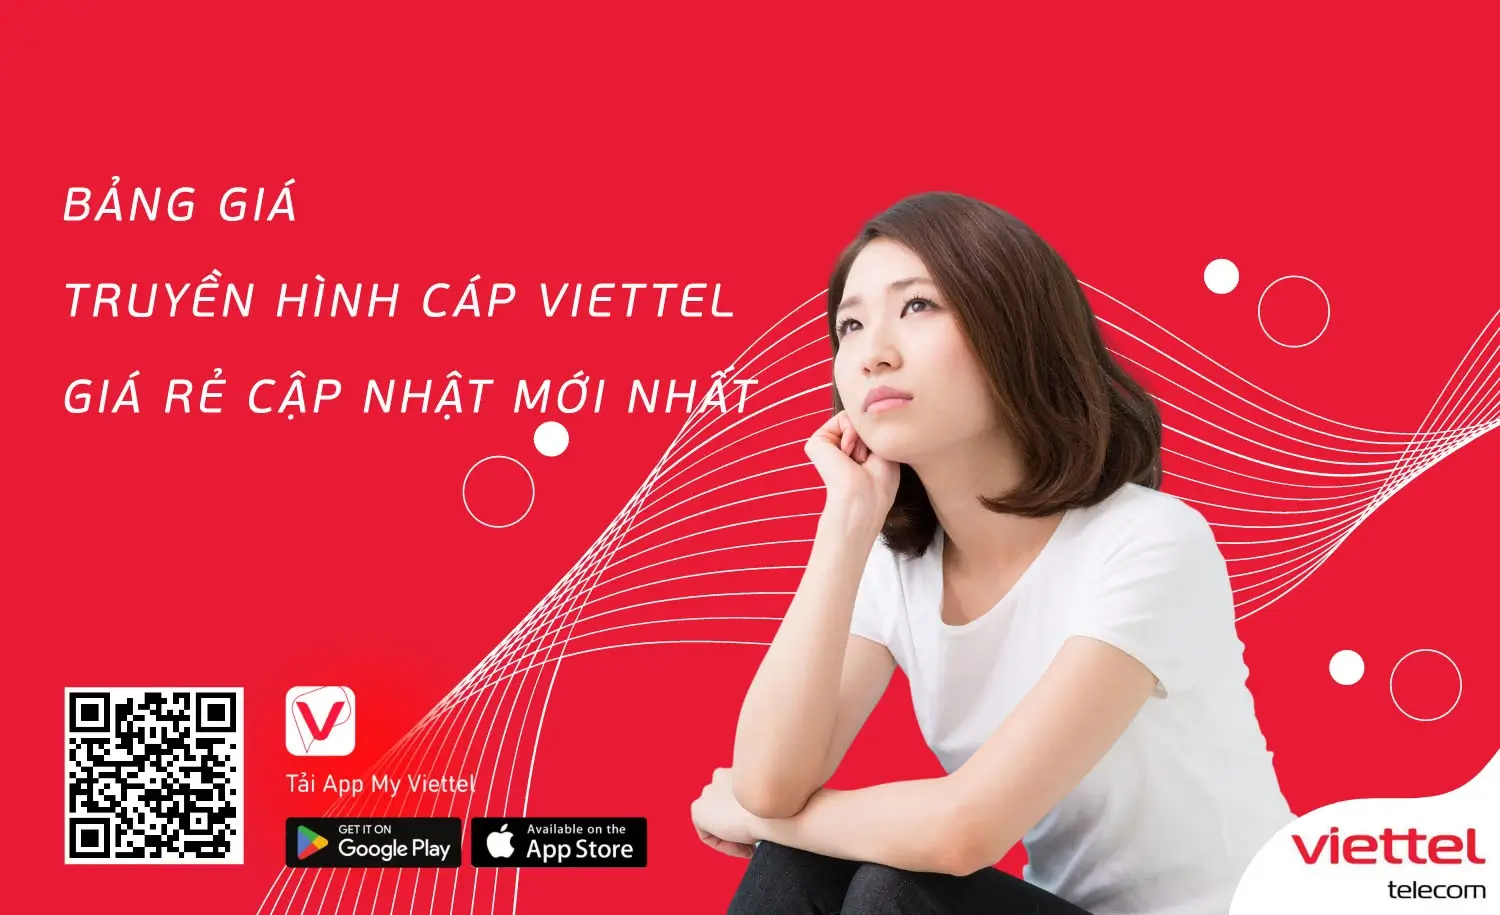 Tận hưởng cuộc sống tiện ích cùng dịch vụ truyền hình Viettel TV360 tại Dương Minh Châu